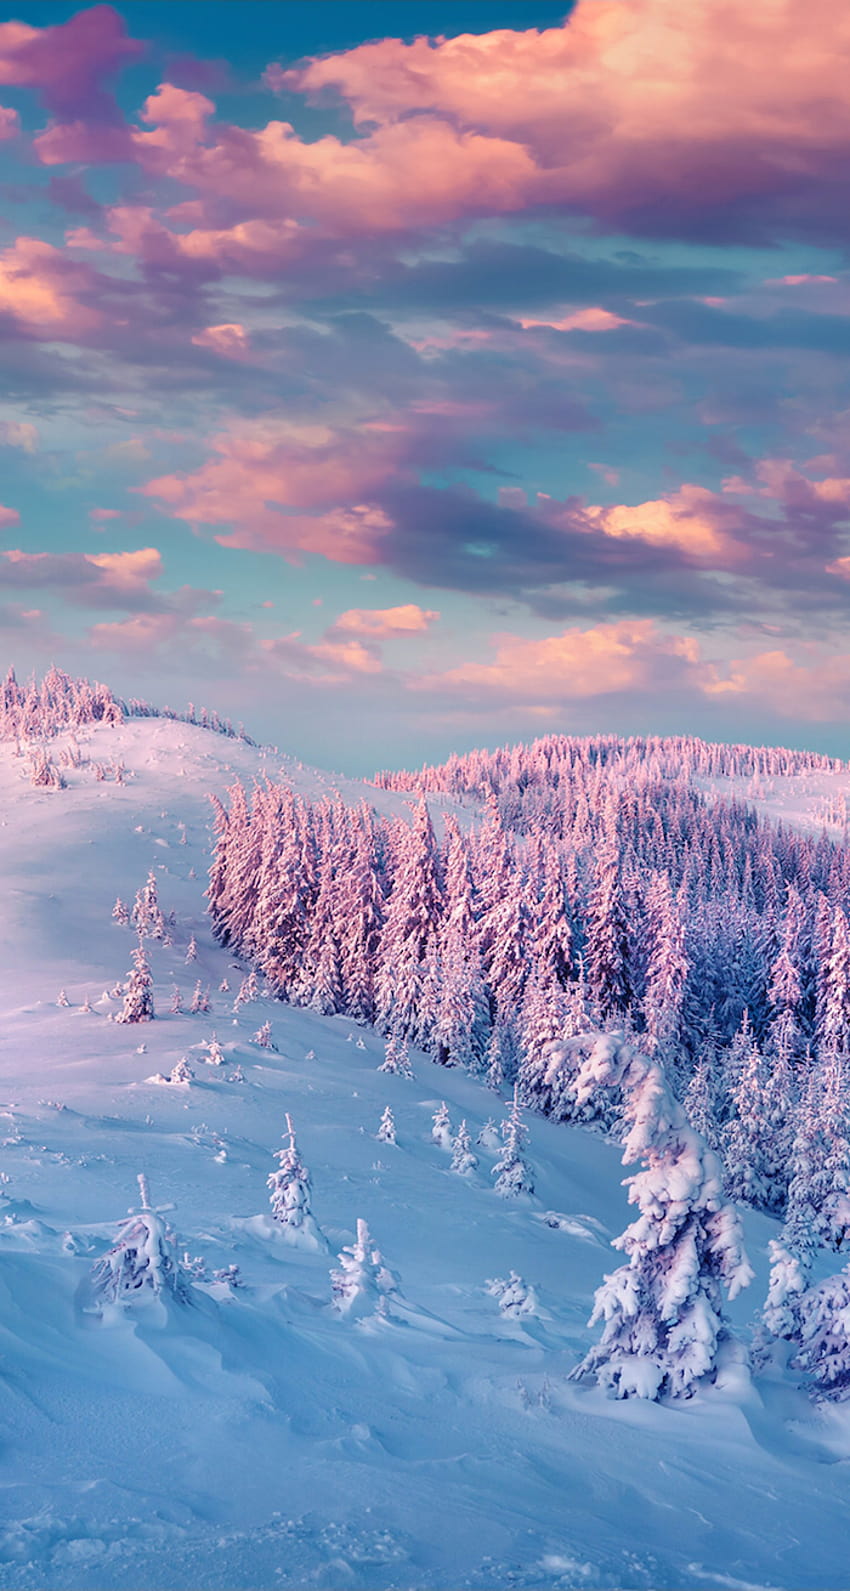 Điểm nhấn của mùa Đông là những bức hình nền đầy màu sắc và tuyết trắng. Hãy cùng chiêm ngưỡng các hình ảnh tuyệt đẹp này để cảm nhận những khoảnh khắc tuyệt vời nhất mùa Đông.